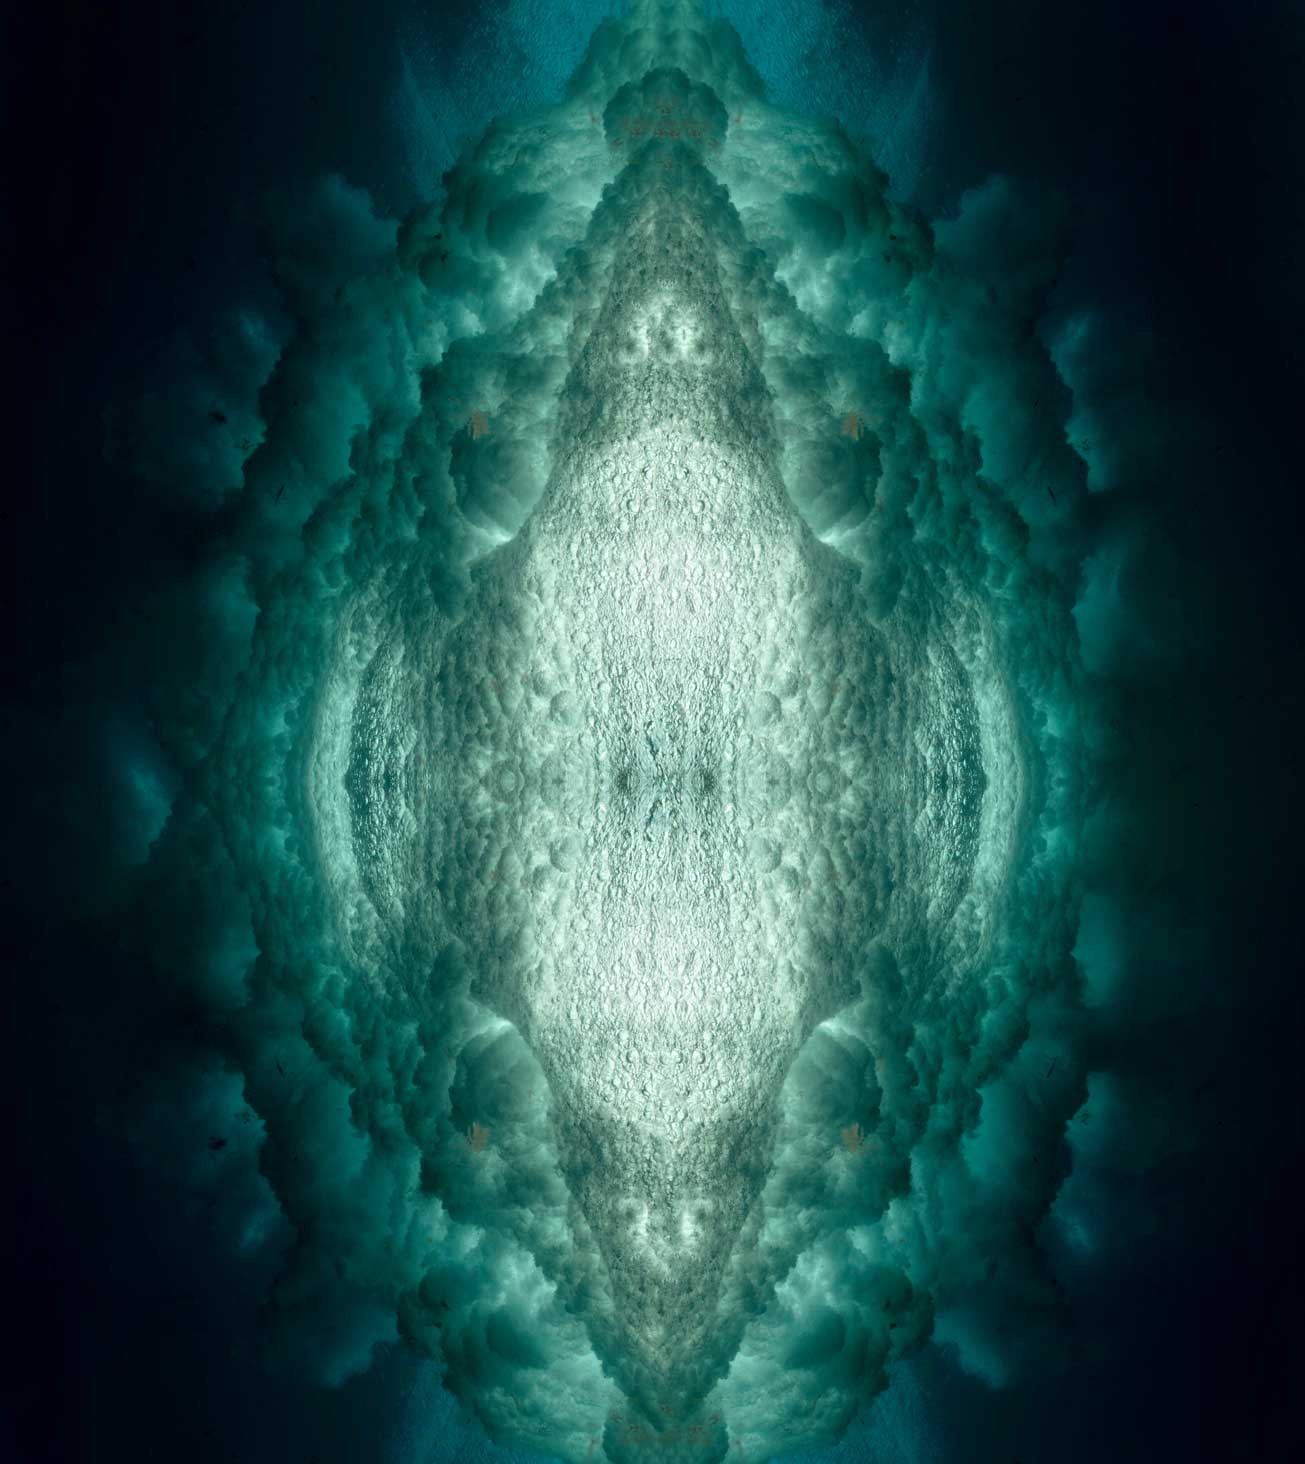 Water - Ocean series Underwater photography by Maya